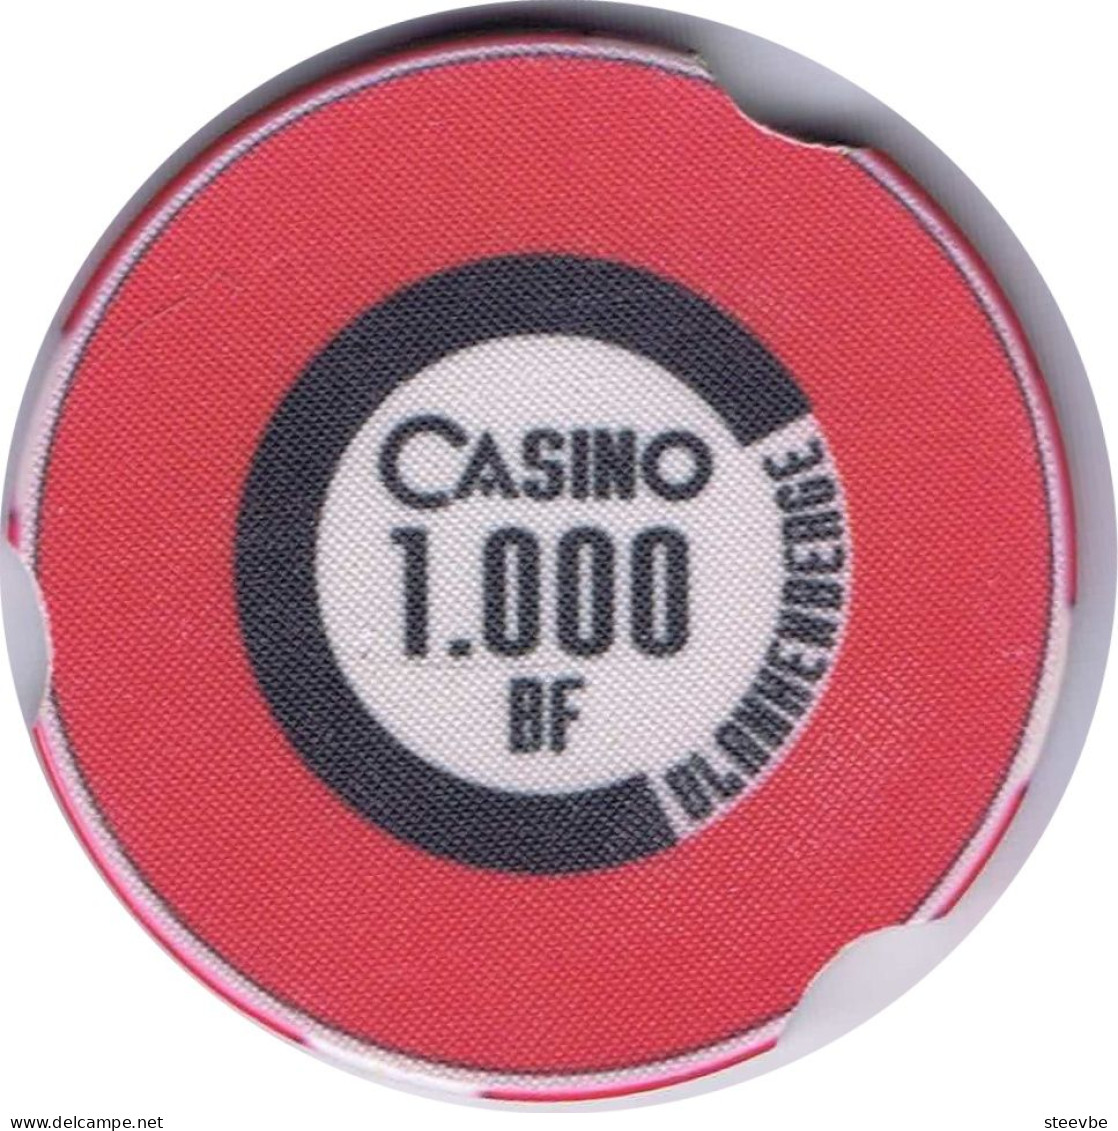 Blankenberge Casino chip fiche 8x Belgium Belgique België